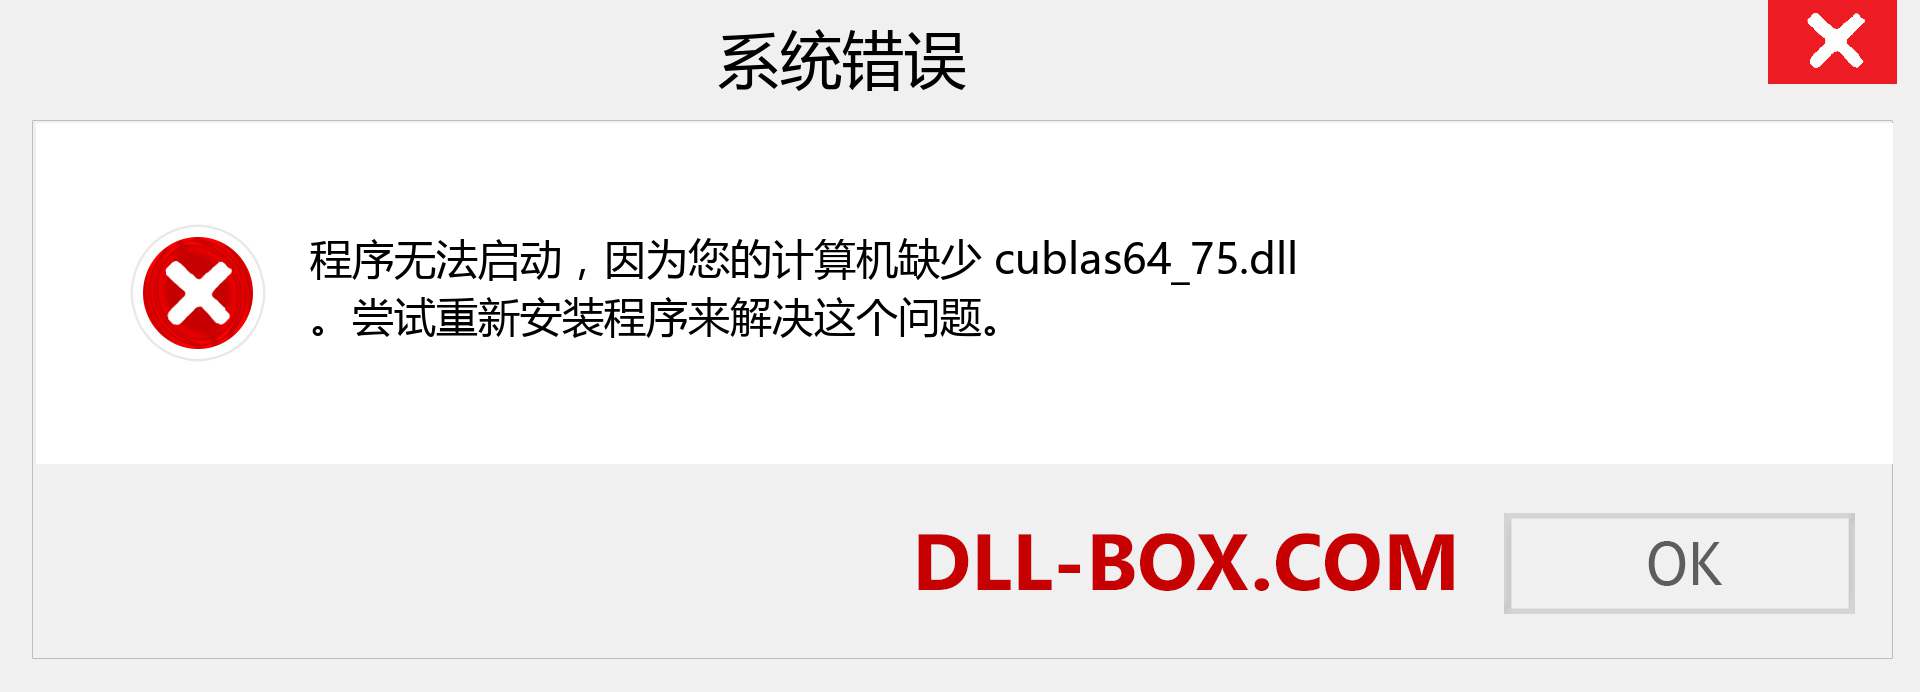 cublas64_75.dll 文件丢失？。 适用于 Windows 7、8、10 的下载 - 修复 Windows、照片、图像上的 cublas64_75 dll 丢失错误